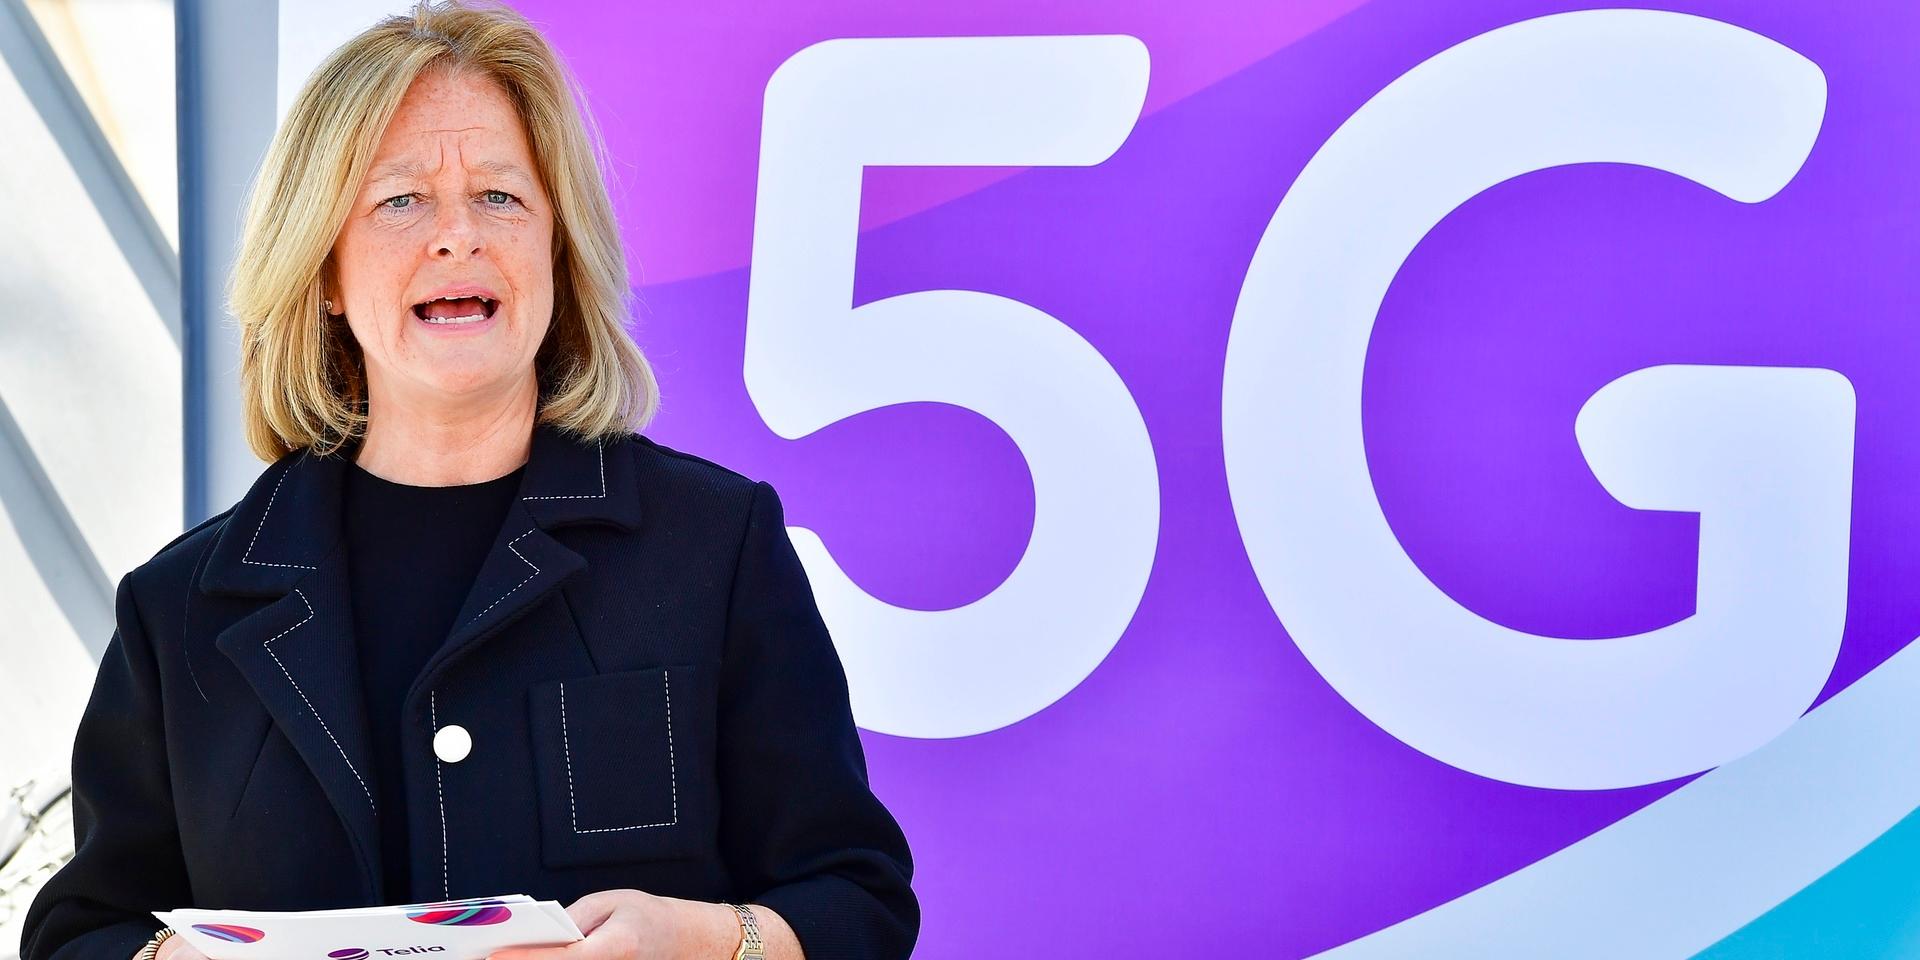 I maj 2020 invigde Telia det första stora publika 5G-nätet i Sverige från ett tak i centrala Stockholm. Allison Kirkby, vd och koncernchef Telia Company invigningstalade 